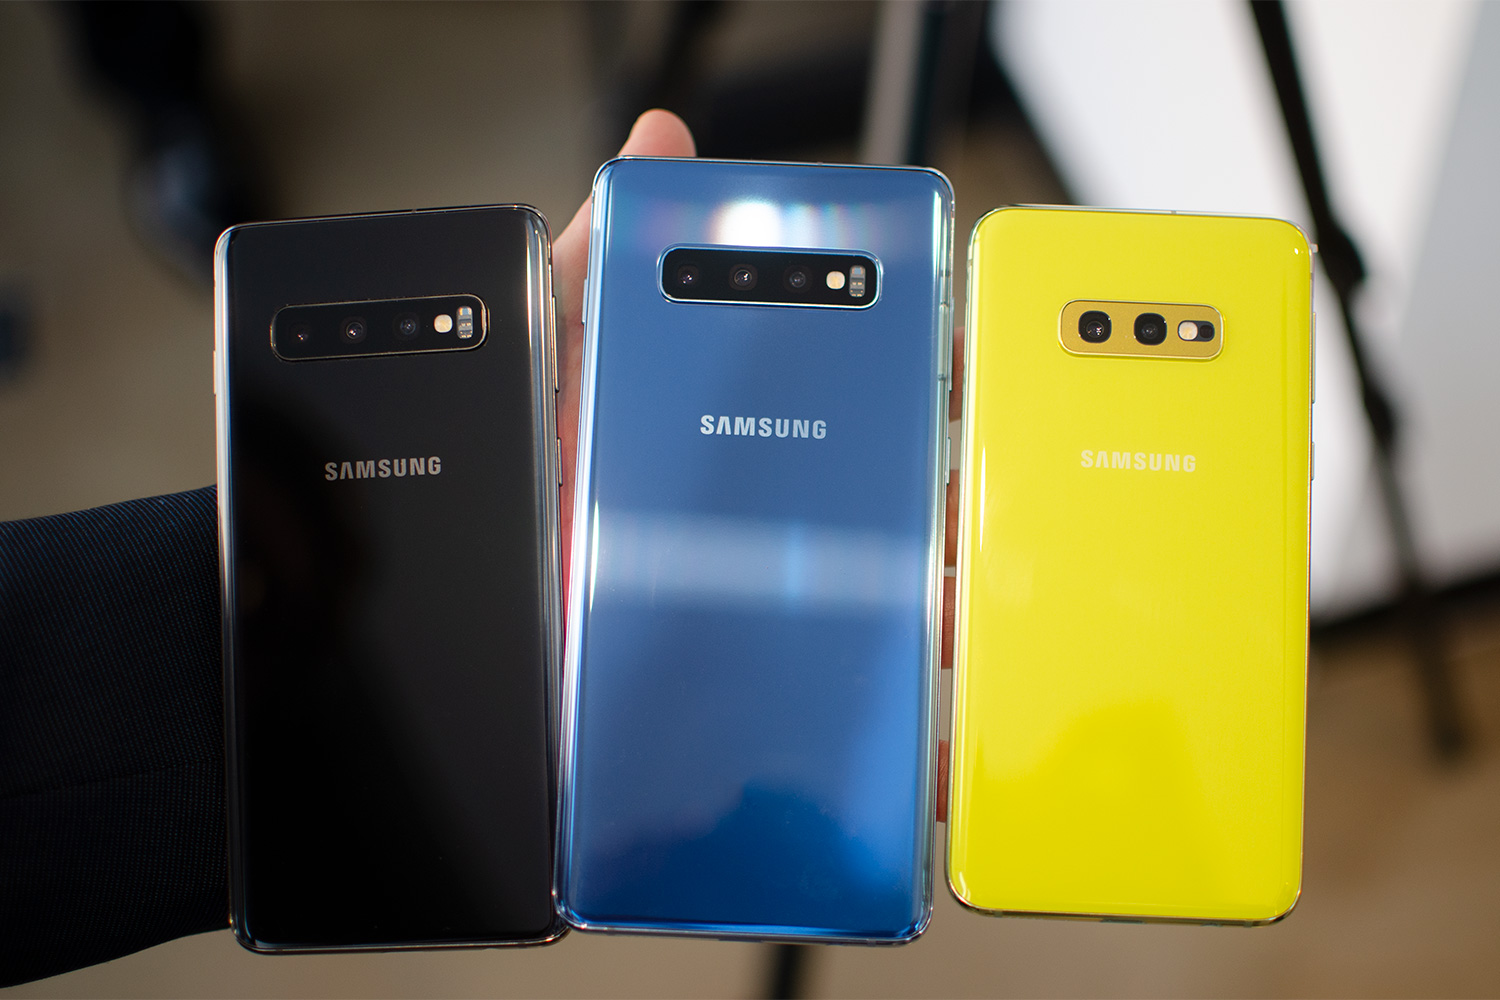 Samsung Galaxy S10 Vs. S10 Plus Vs. S10e Vs. S10 5G, Comparison